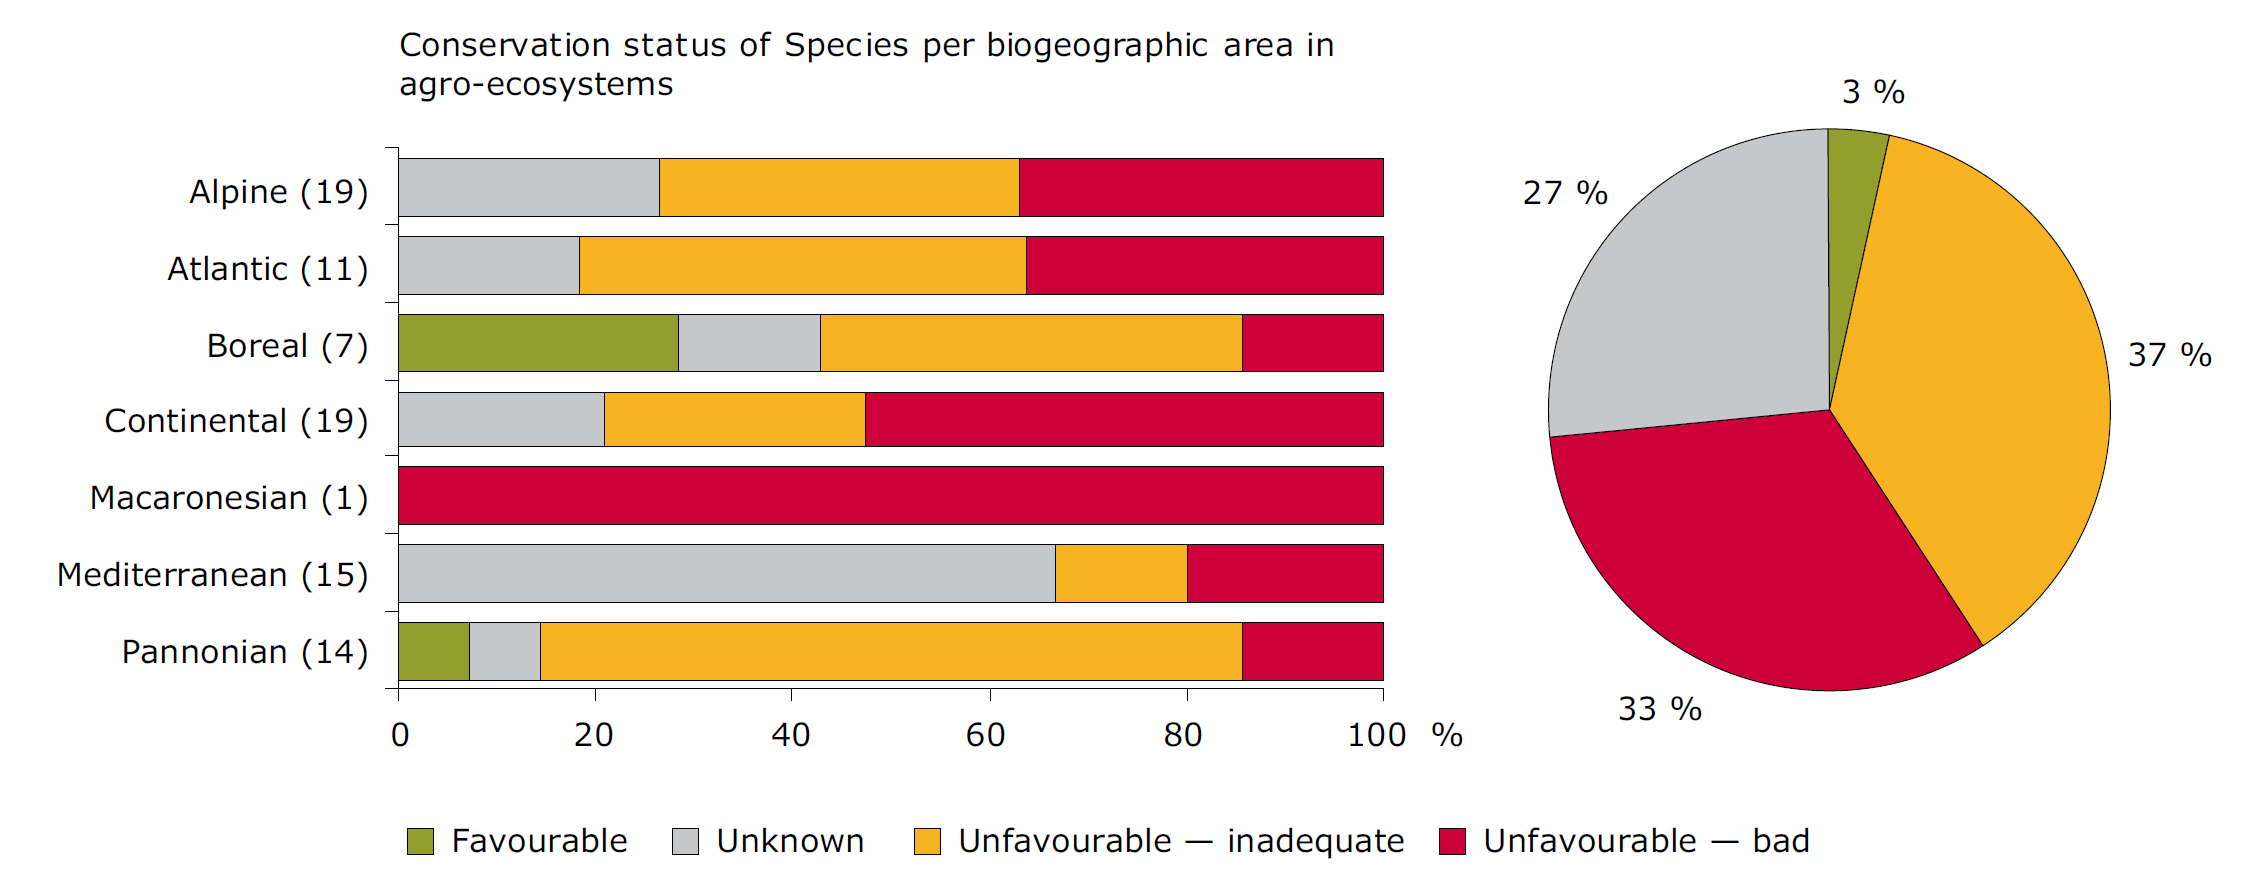 Mezőgazdasági területekhez kötődő közösségi jelentőségű fajok állapota 2013.